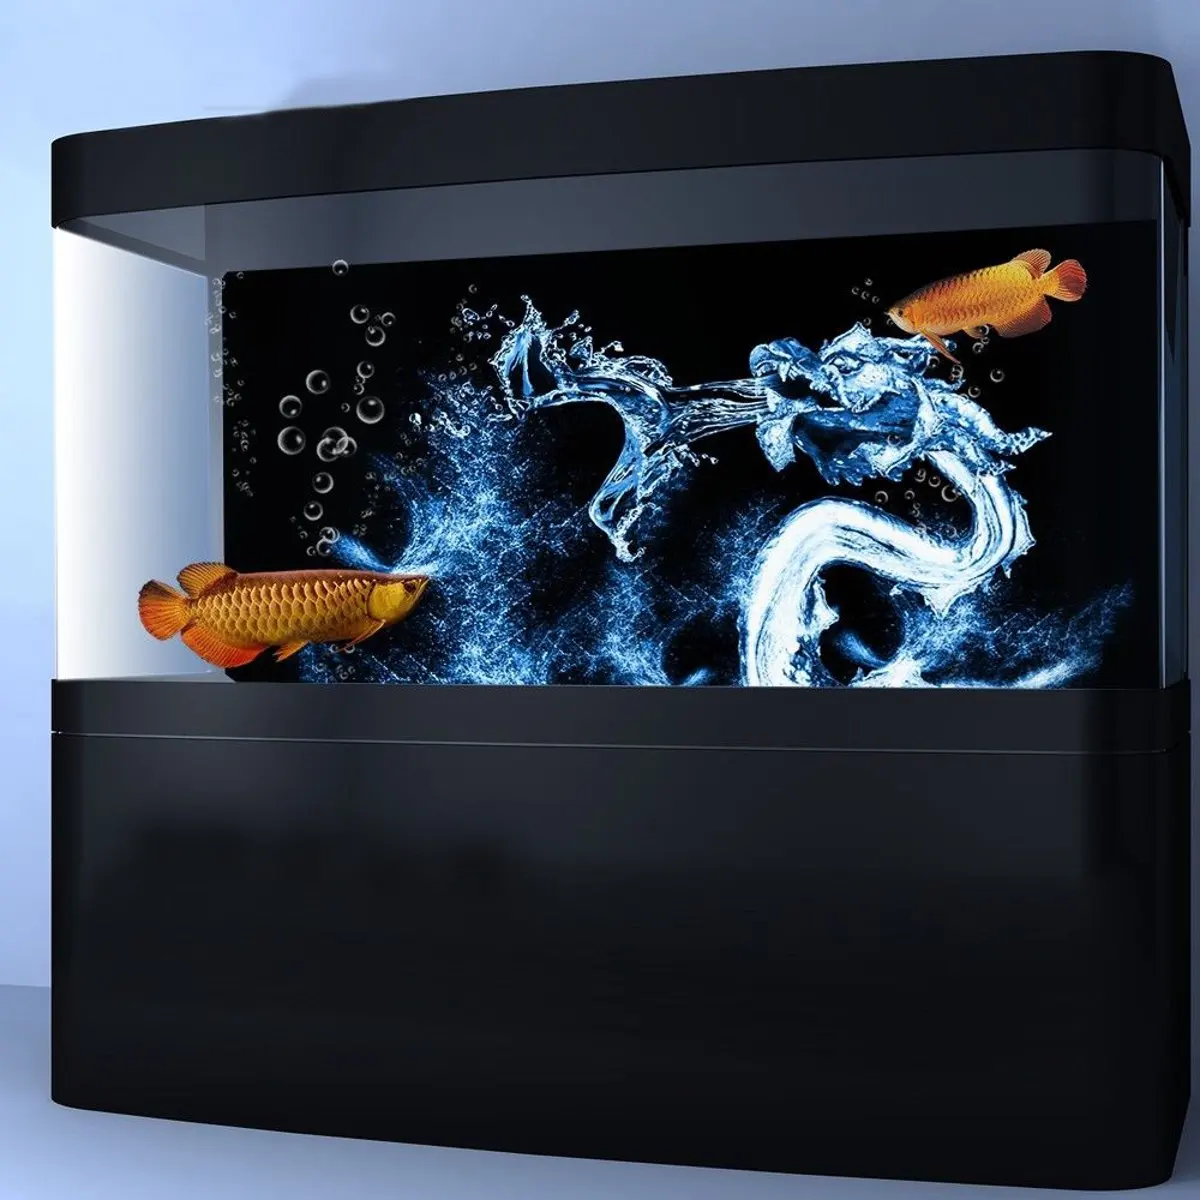 HD воды Дракон аквариум фон плакат задний фон для аквариума Живопись украшения Клей Бумага пейзаж декоративные наклейки